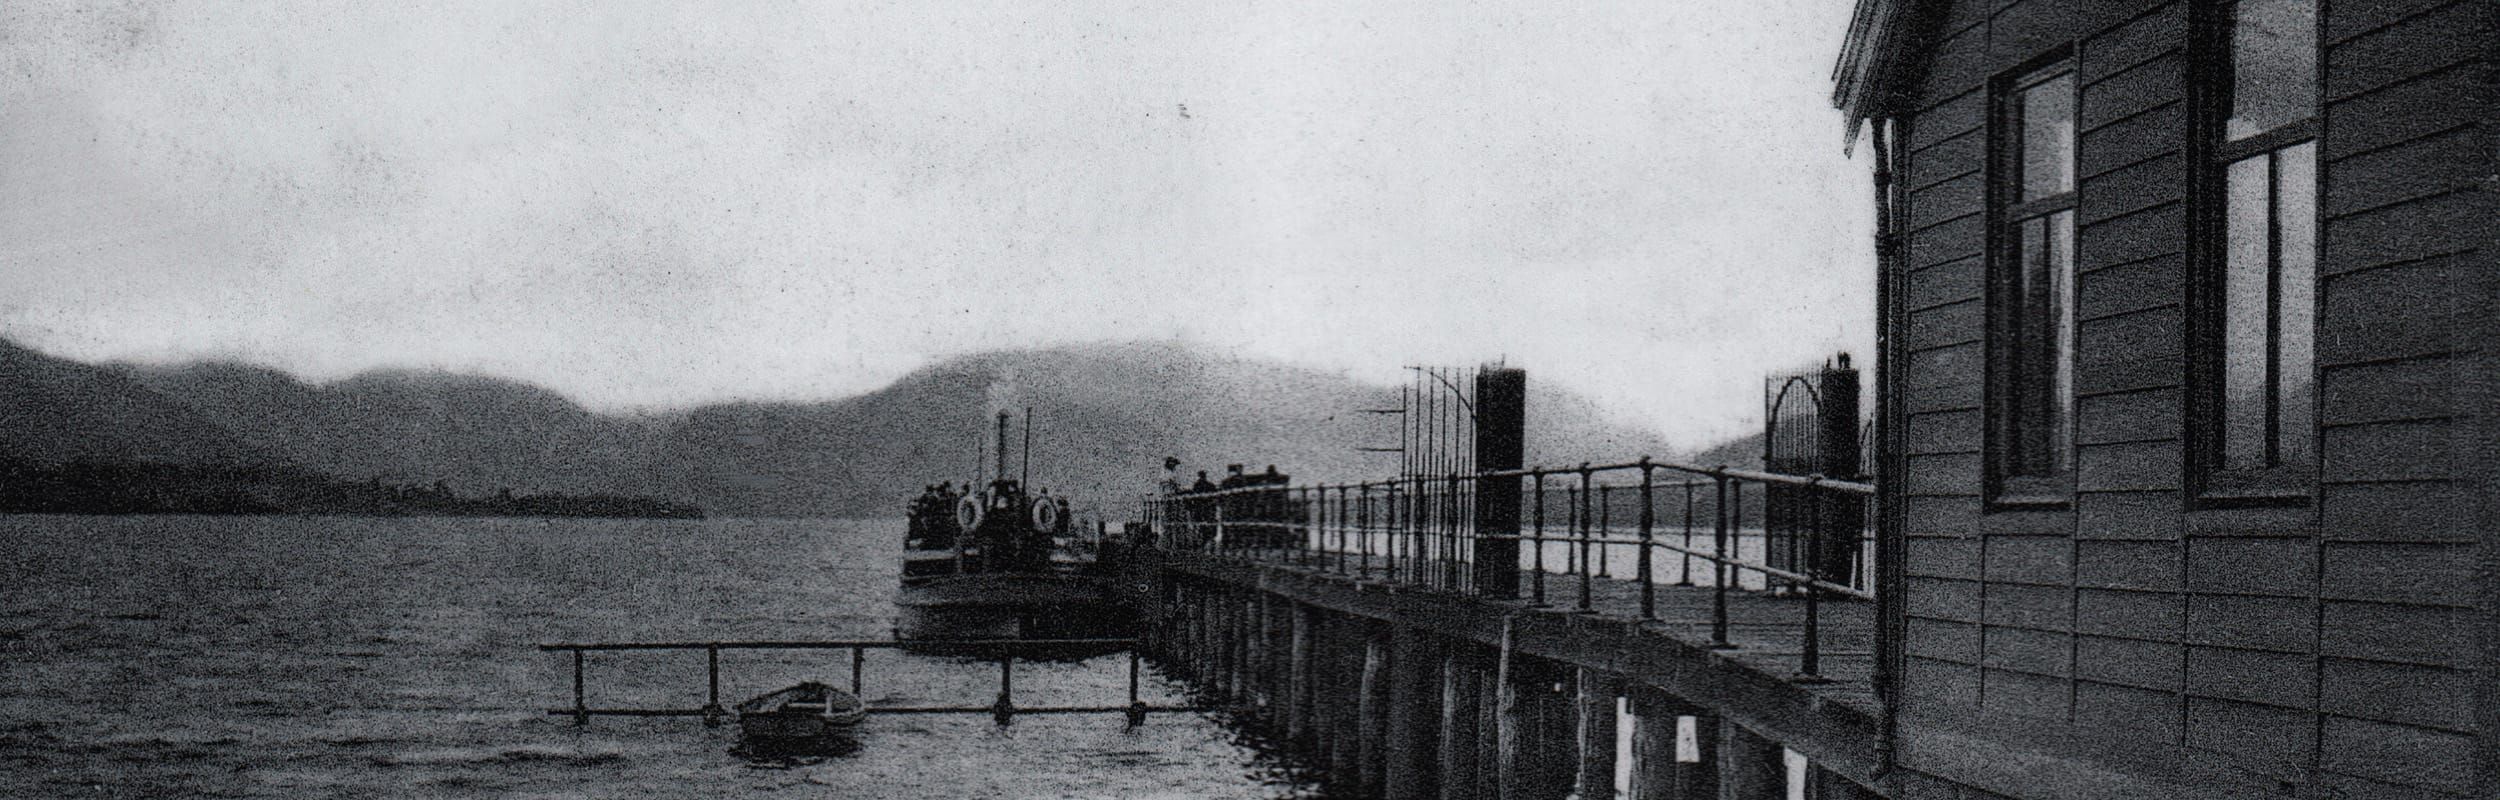 Historic photo of Pooley Bridge pier